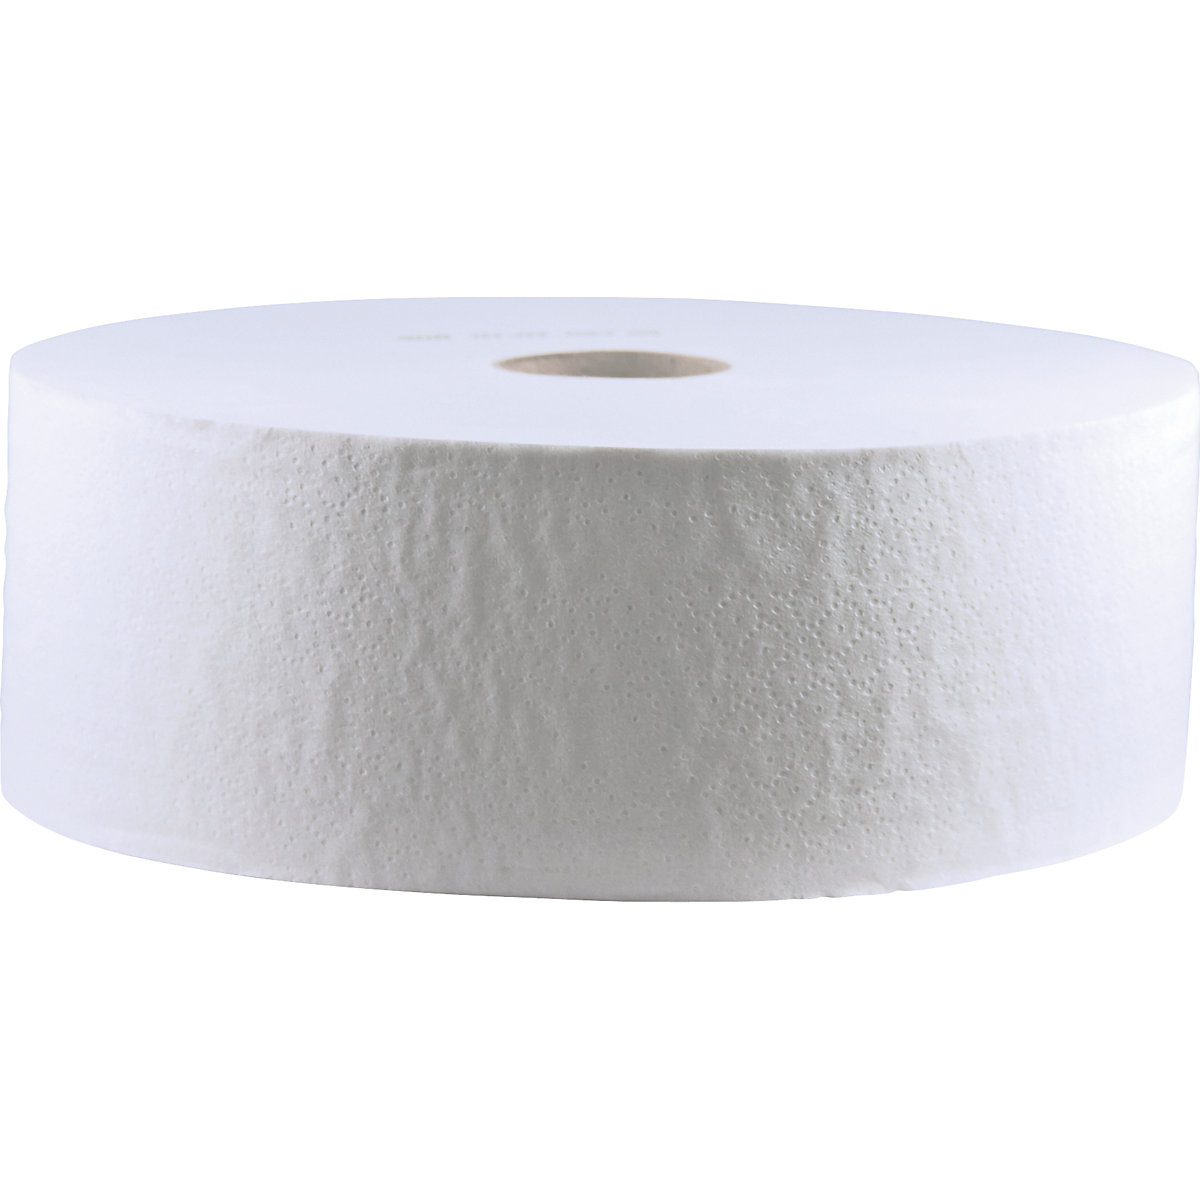 Toaletný papier, veľké kotúče Tissue - CWS